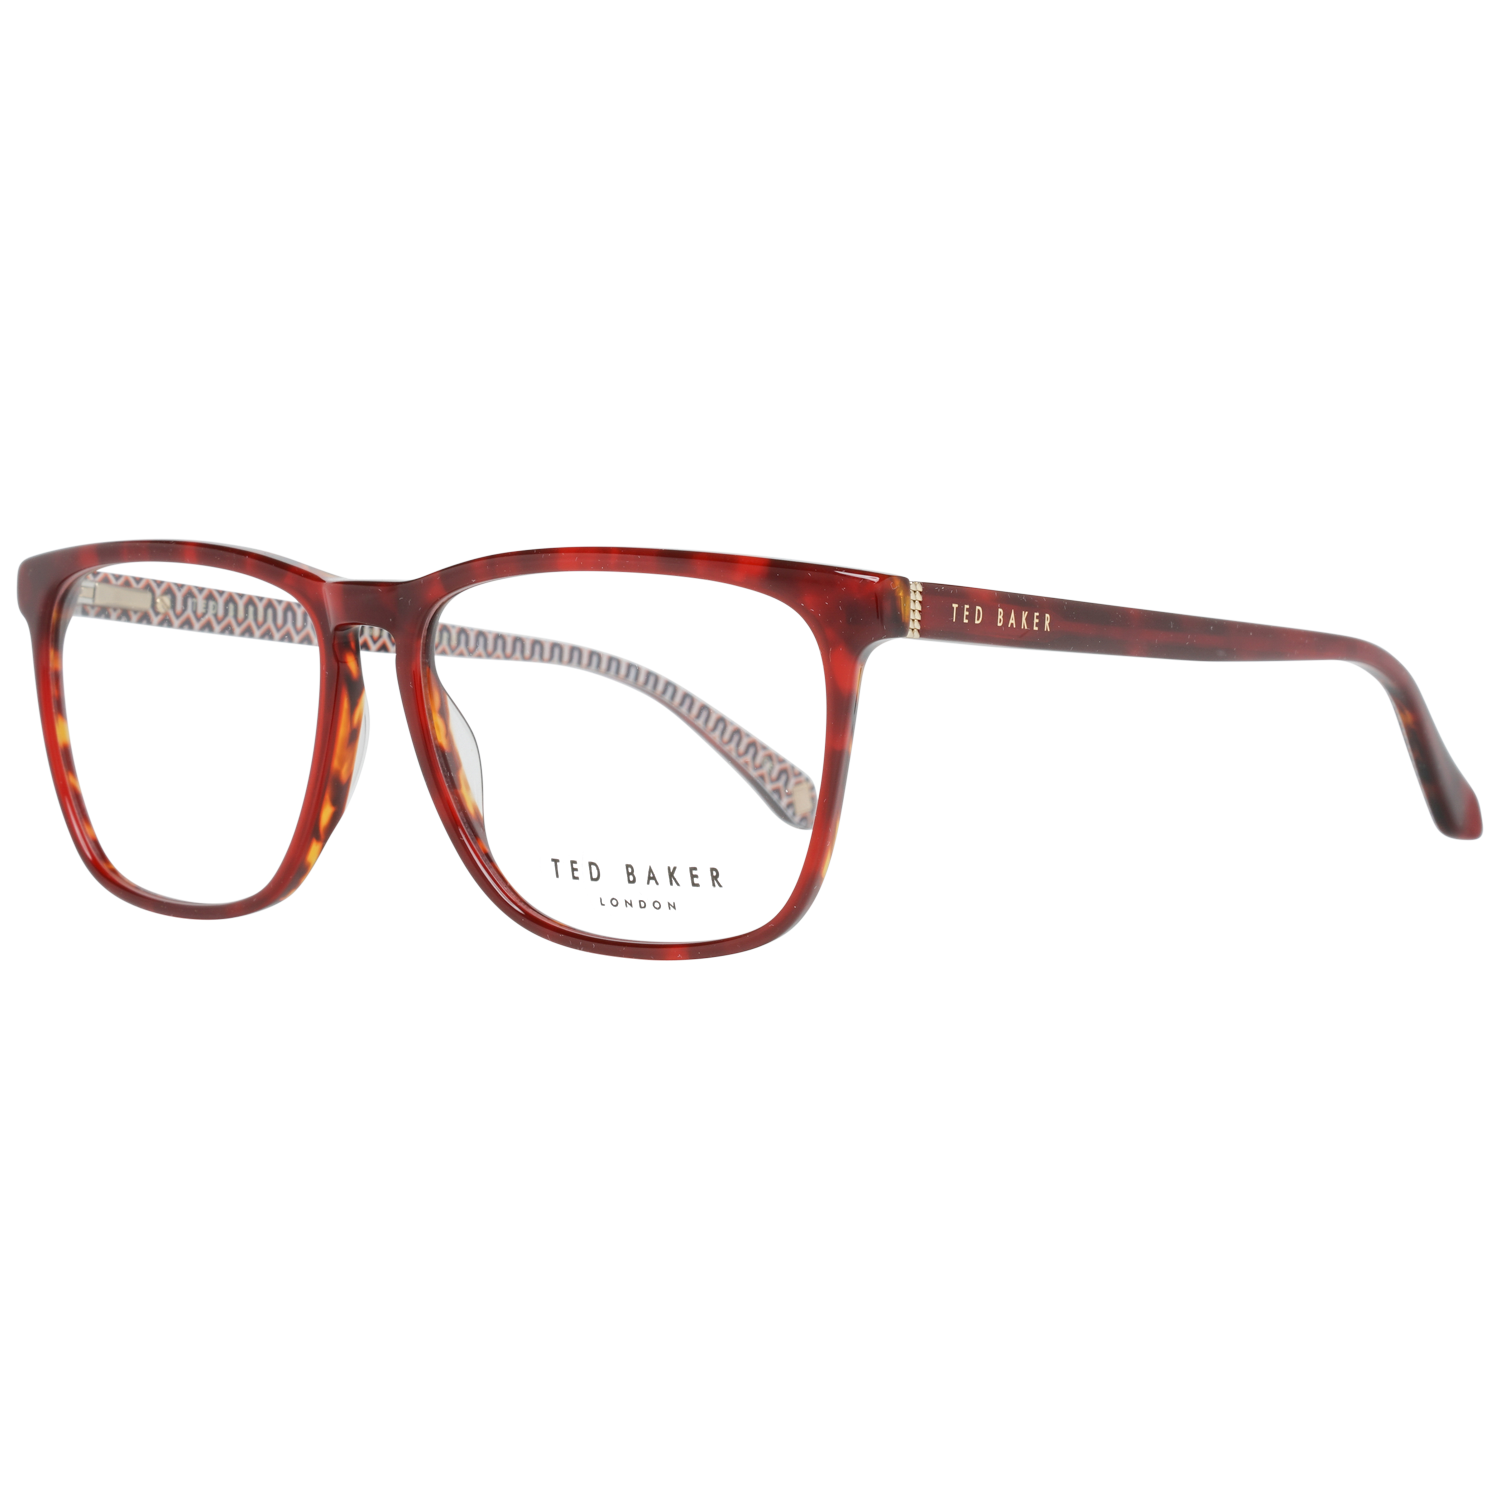 Ted Baker Frames Ted Baker Optical Frame TB8208 259 54 Eyeglasses Eyewear UK USA Australia 